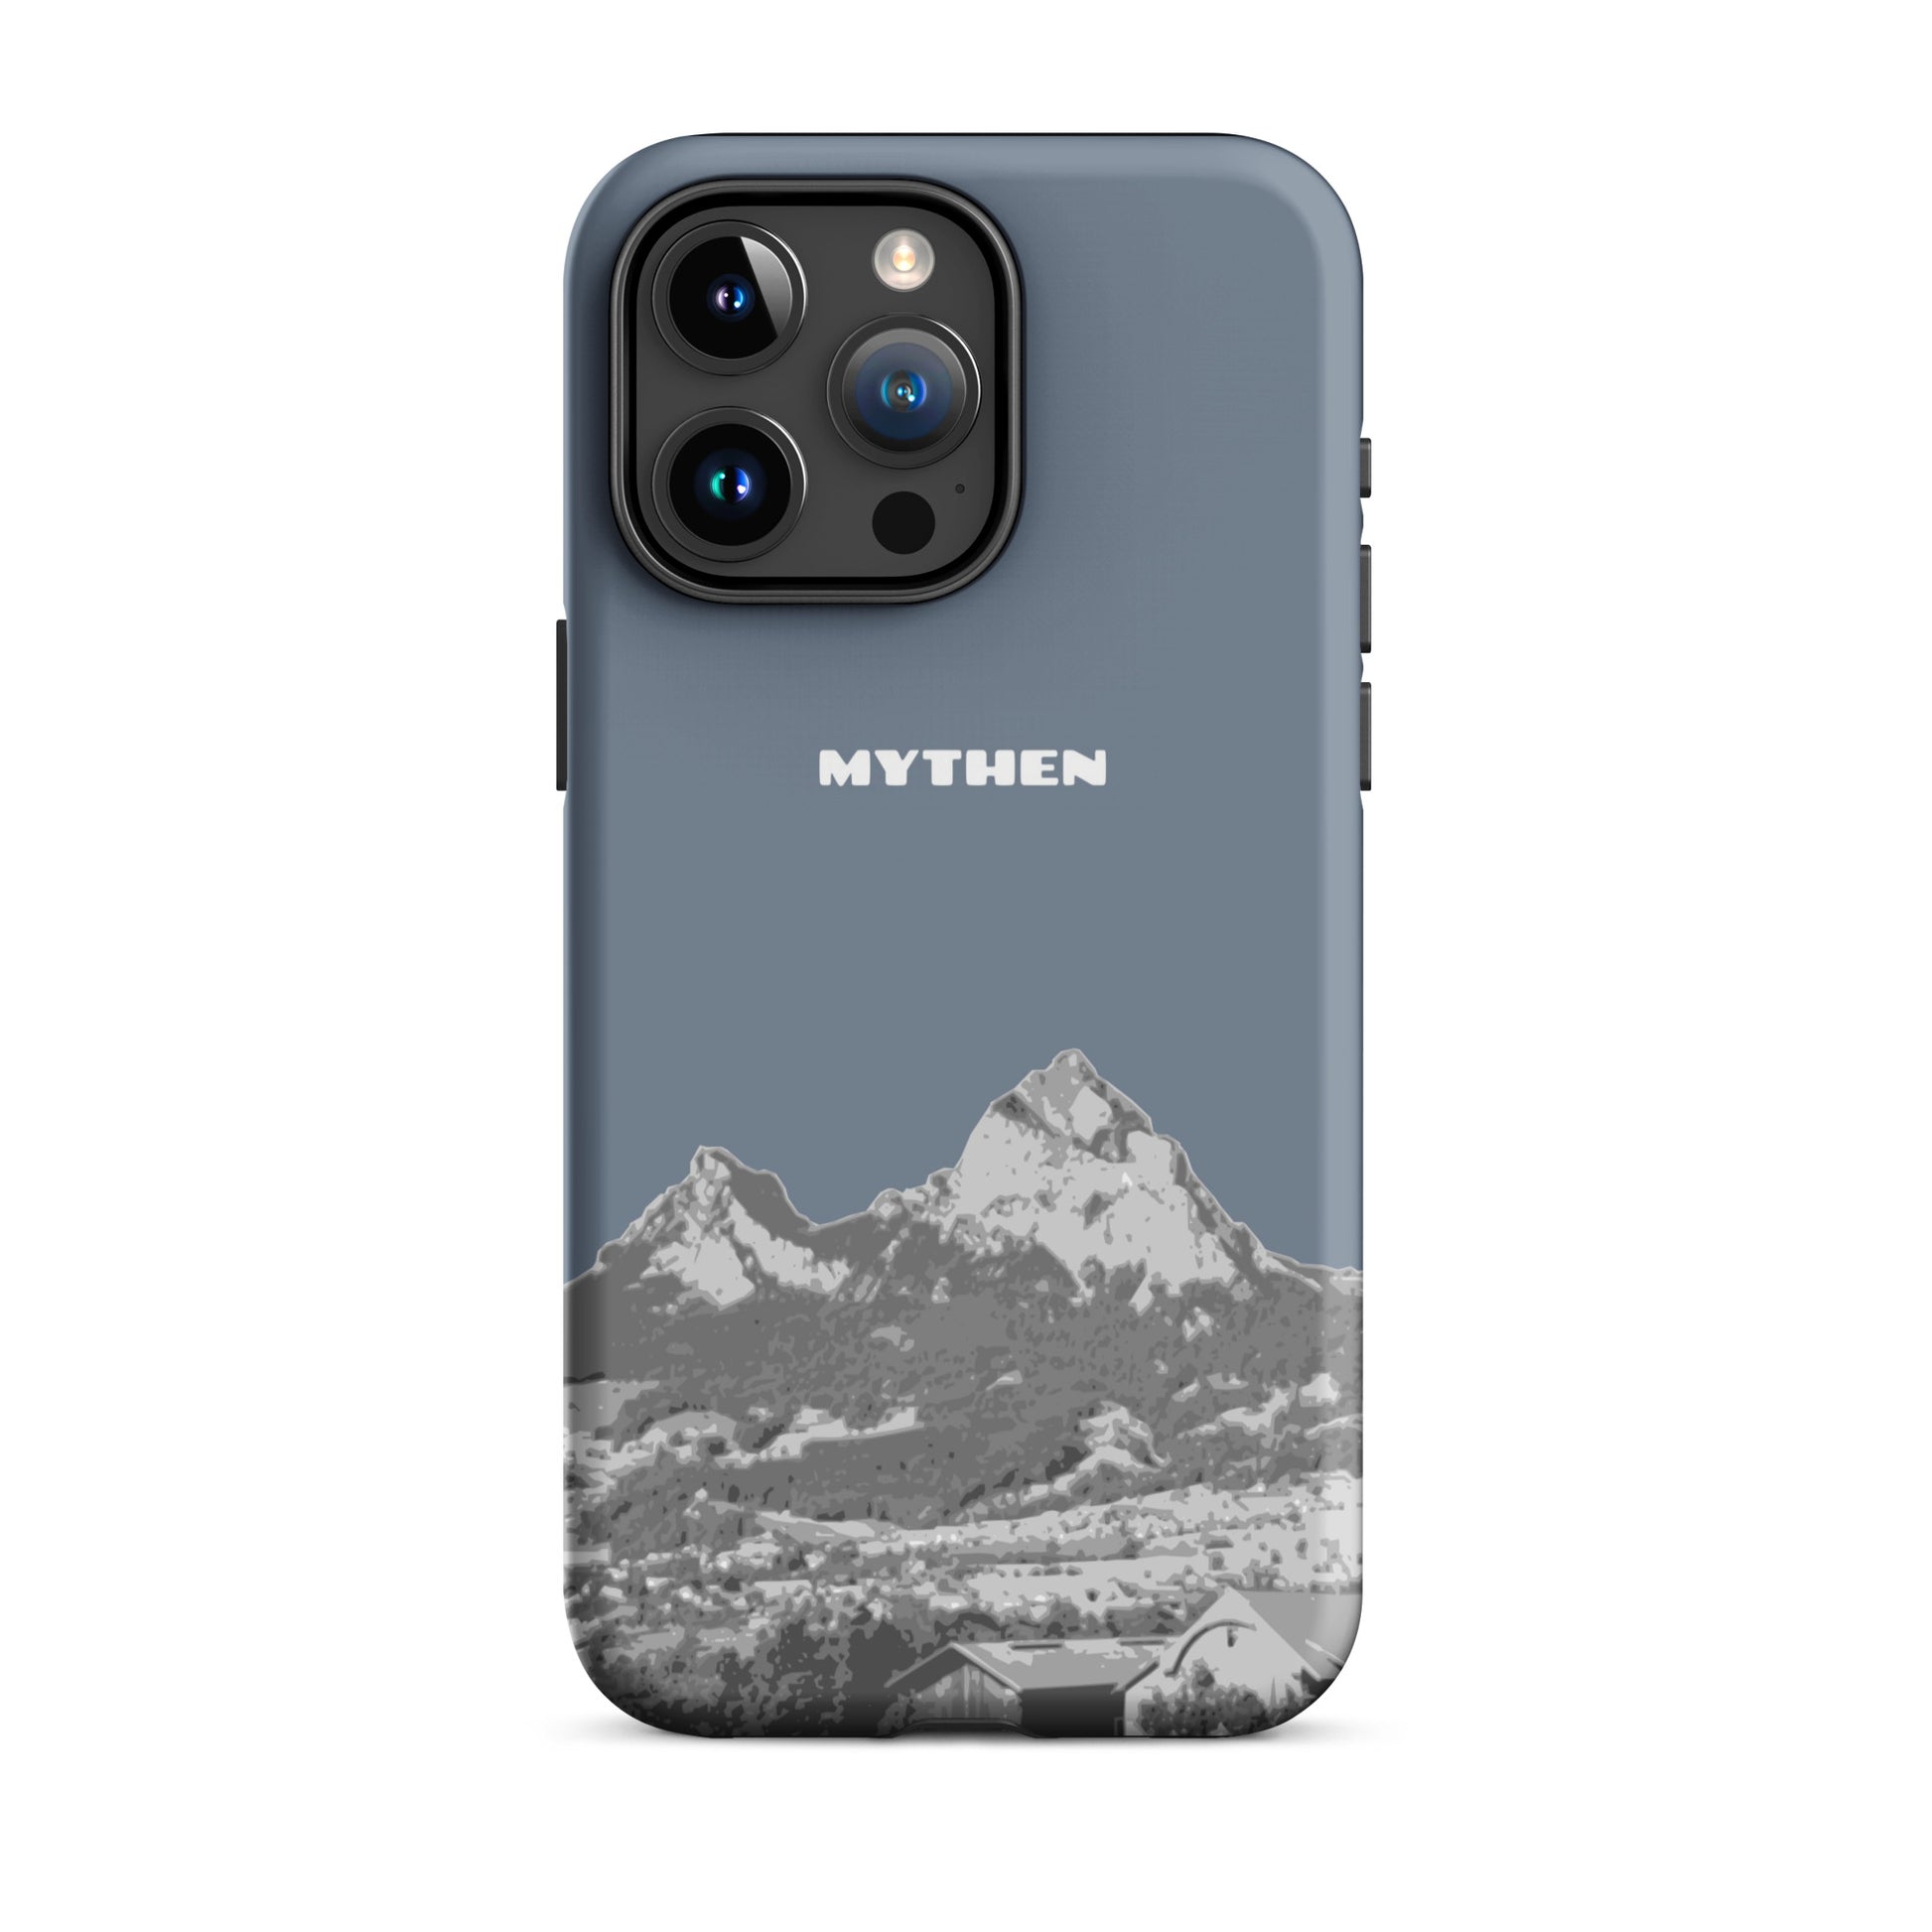 Hülle für das iPhone 15 Pro Max von Apple in der Farbe Schiefergrau, die den Grossen Mythen und den Kleinen Mythen bei Schwyz zeigt. 